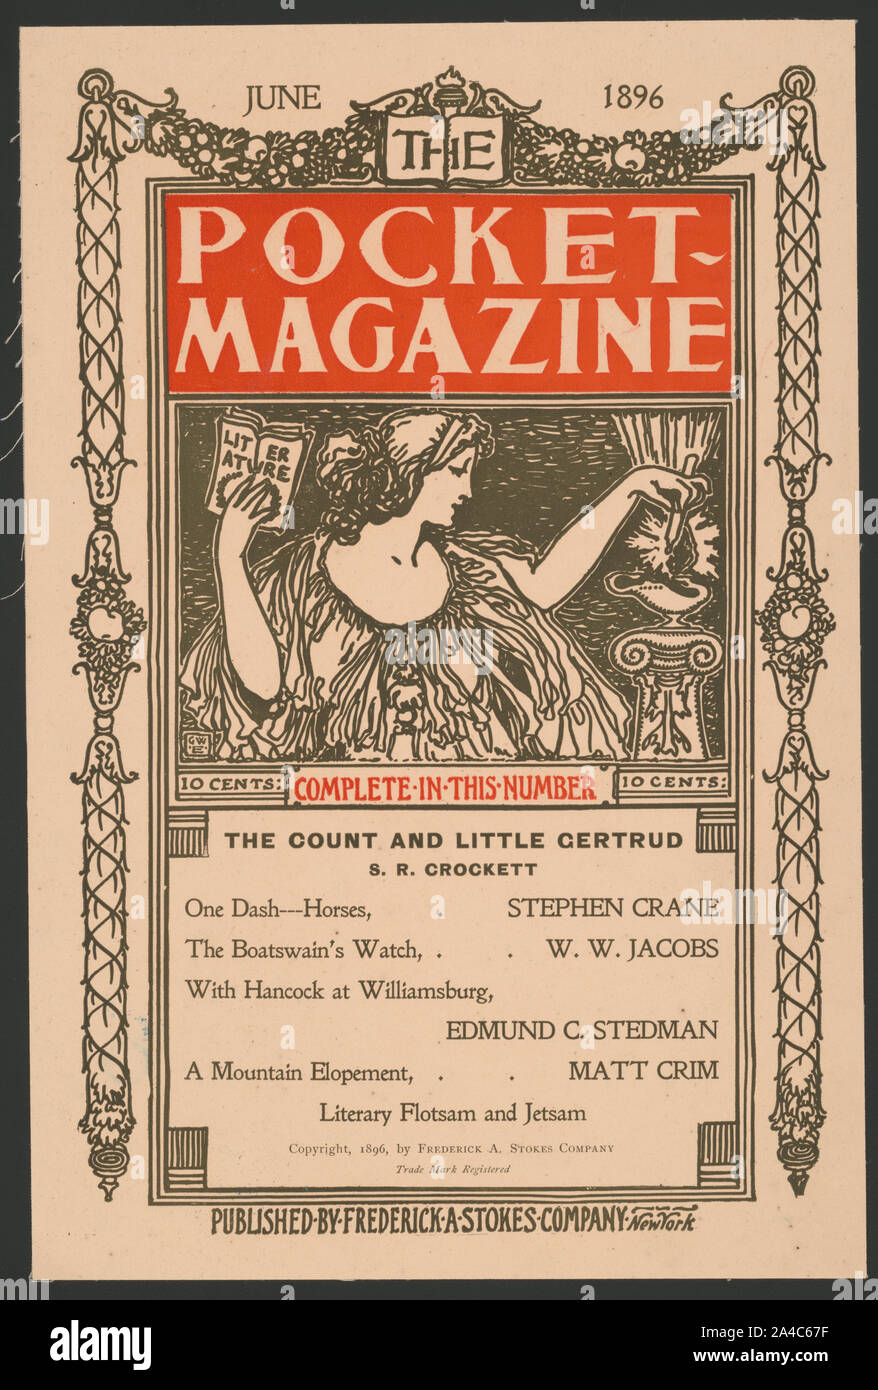 Der Pocket Magazin. Juni 1896. Der Graf und die wenig certrud. S.R. Crockett. Stockfoto